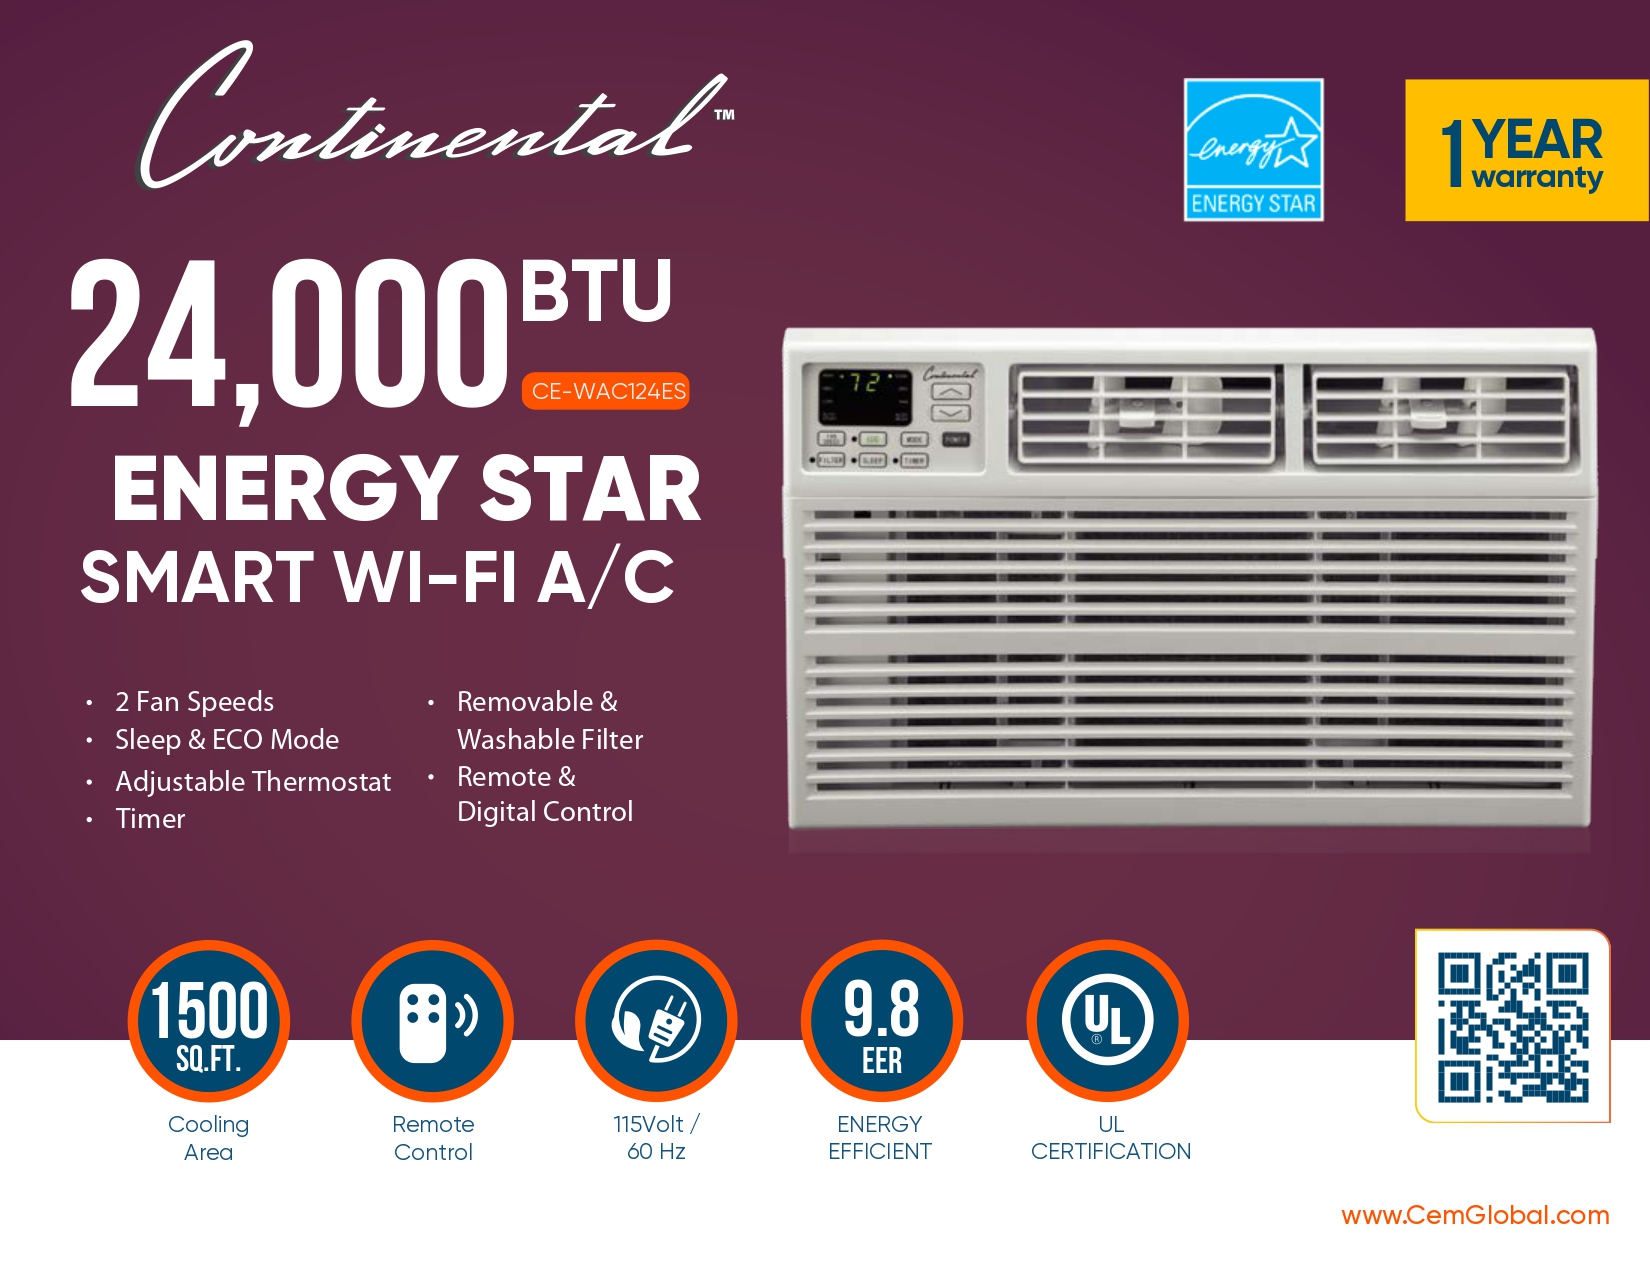 24,000 BTU ENERGY STAR SMART WI-FI A/C